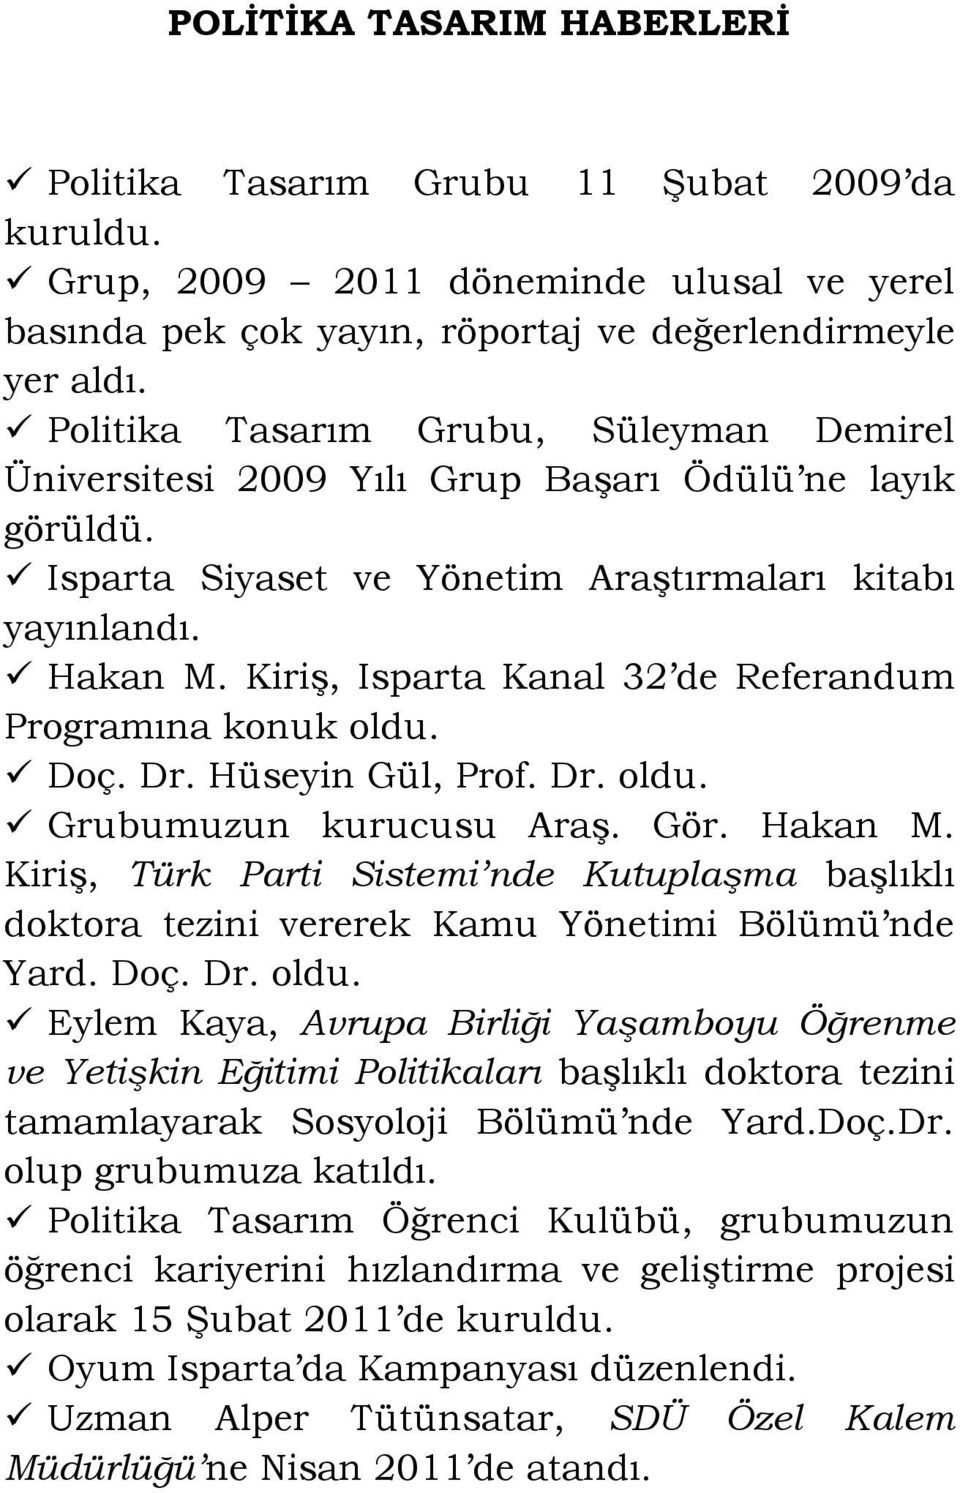 Kiriş, Isparta Kanal 32 de Referandum Programına konuk oldu. Doç. Dr. Hüseyin Gül, Prof. Dr. oldu. Grubumuzun kurucusu Araş. Gör. Hakan M.